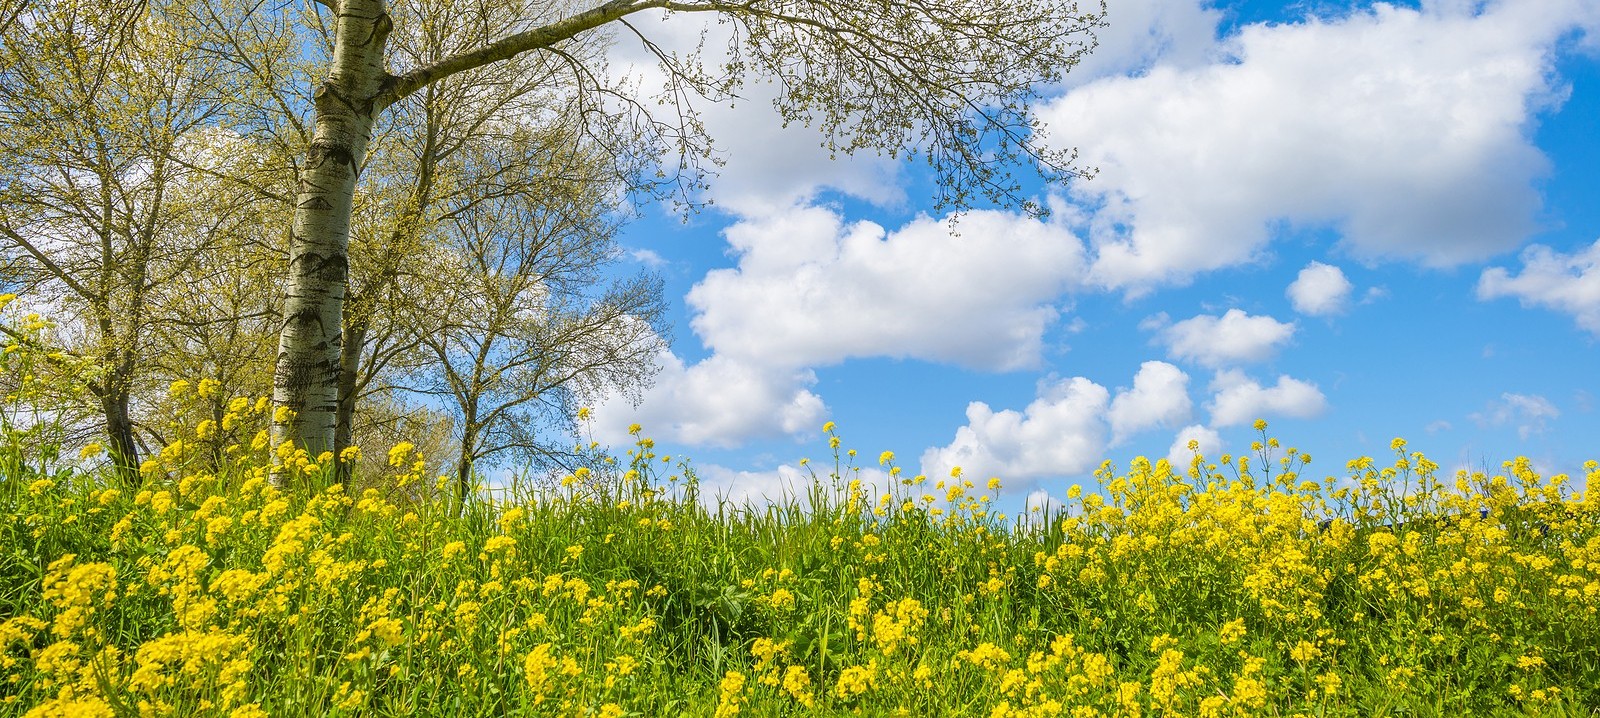 bigstock-Yellow-Wild-Flowers-Blooming-I-419797624 (1).jpg